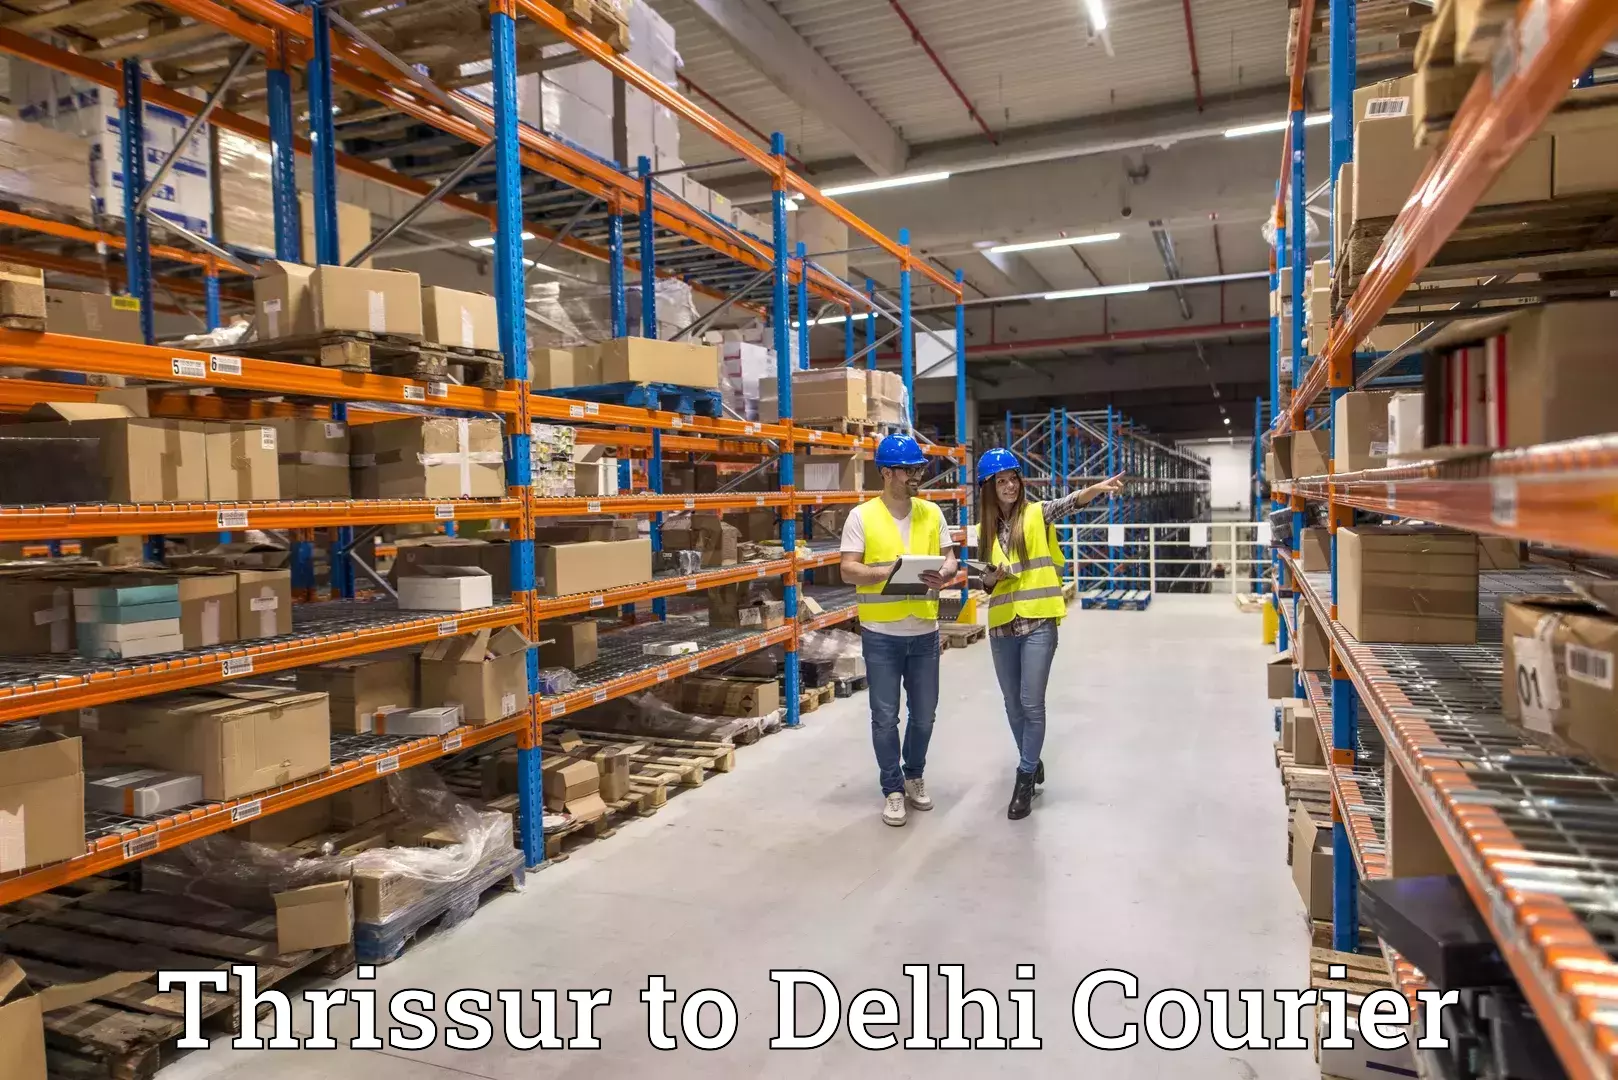 Courier service comparison Thrissur to East Delhi